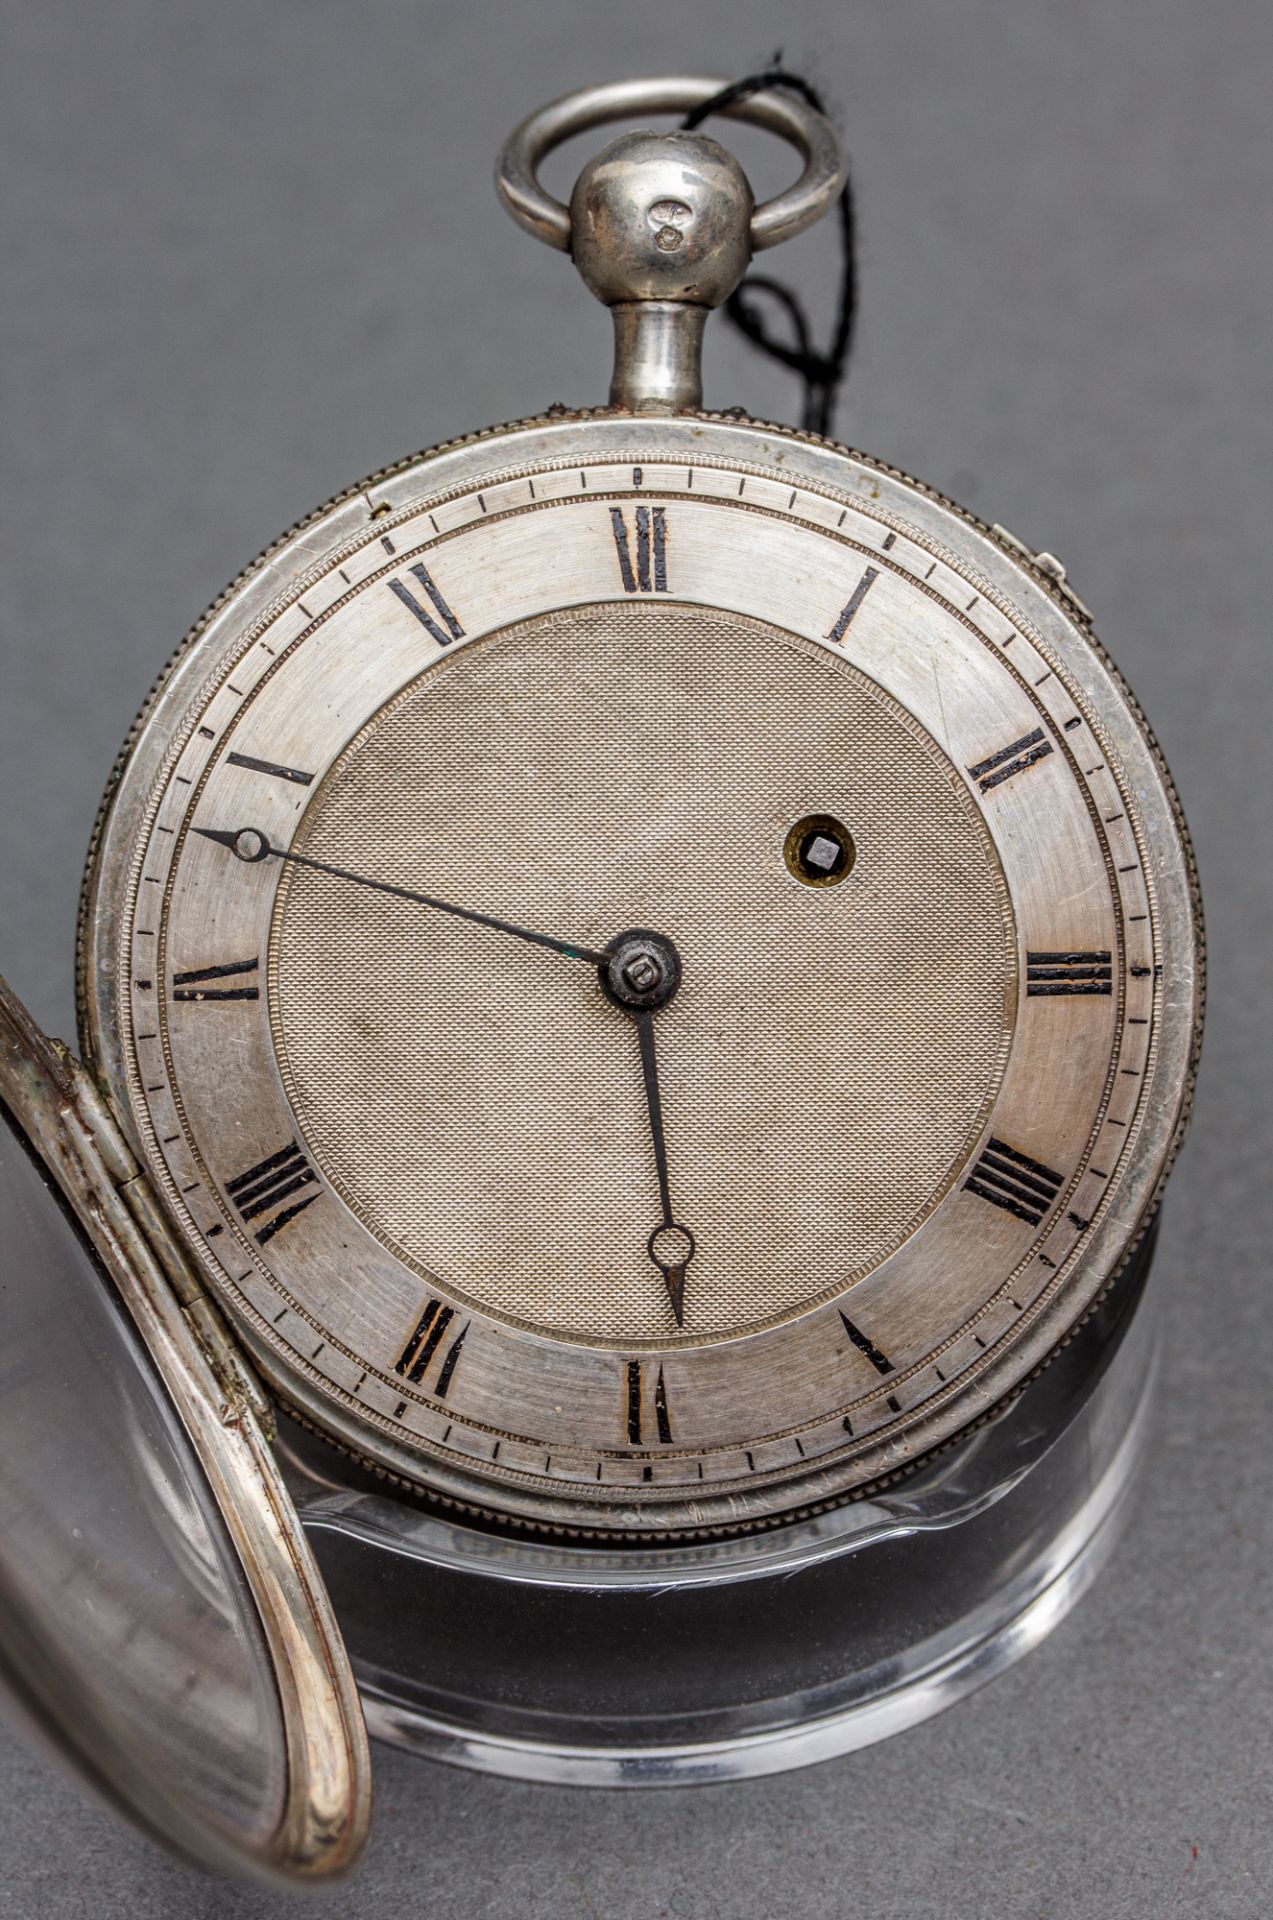 Taschenuhr mit Viertelstundenrepetition, wohl England, 19. Jh., Silber - Bild 2 aus 4